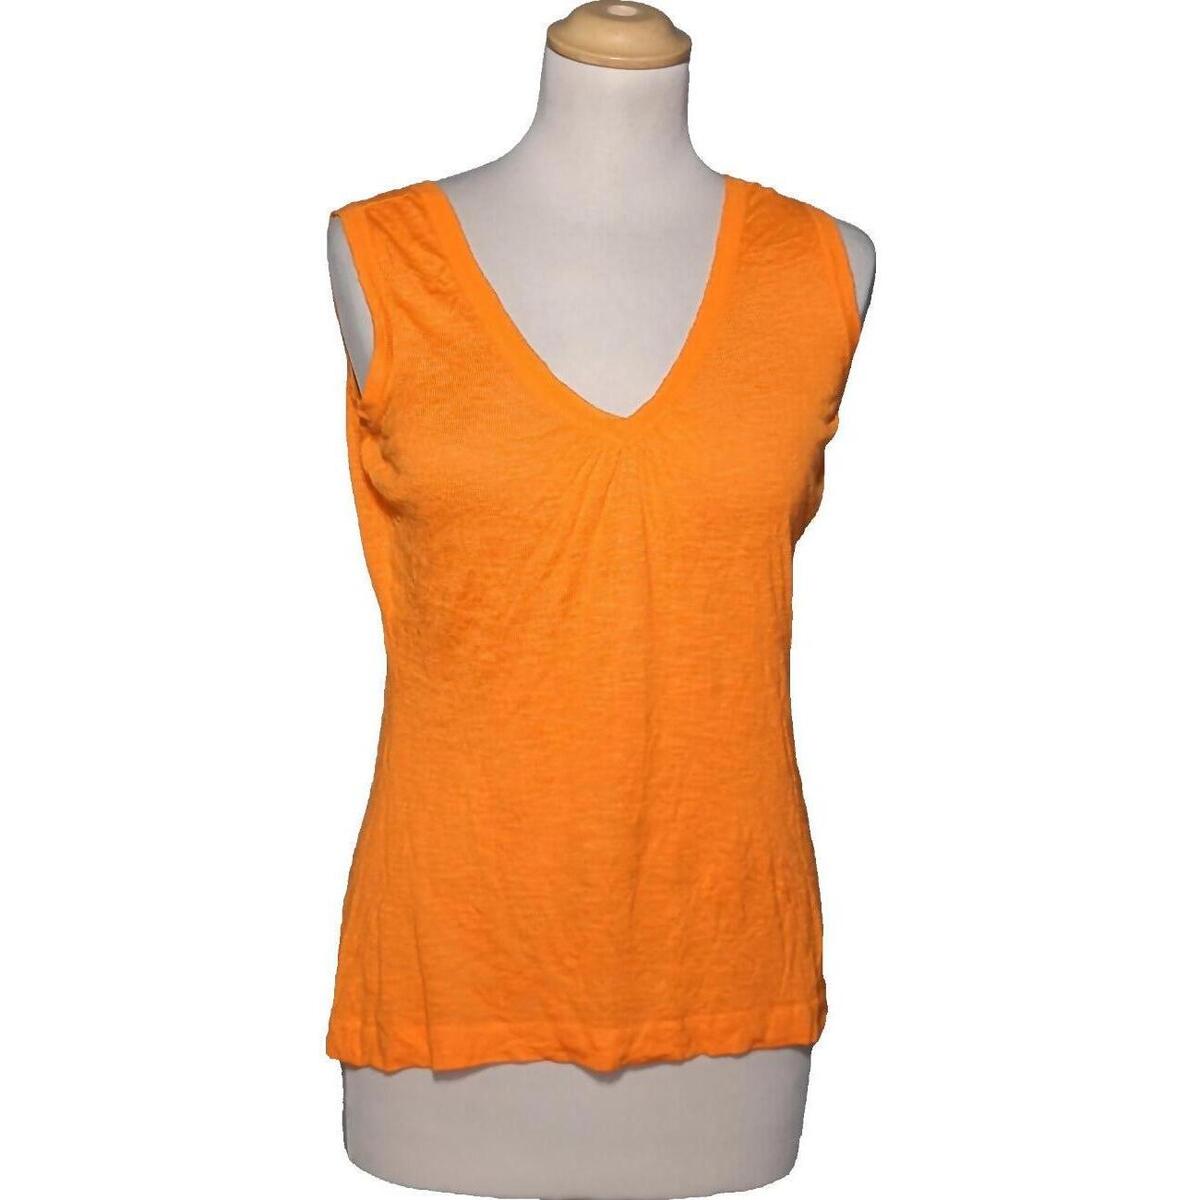 Vêtements Femme Givenchy Island crew neck sweatshirt débardeur  40 - T3 - L Orange Orange